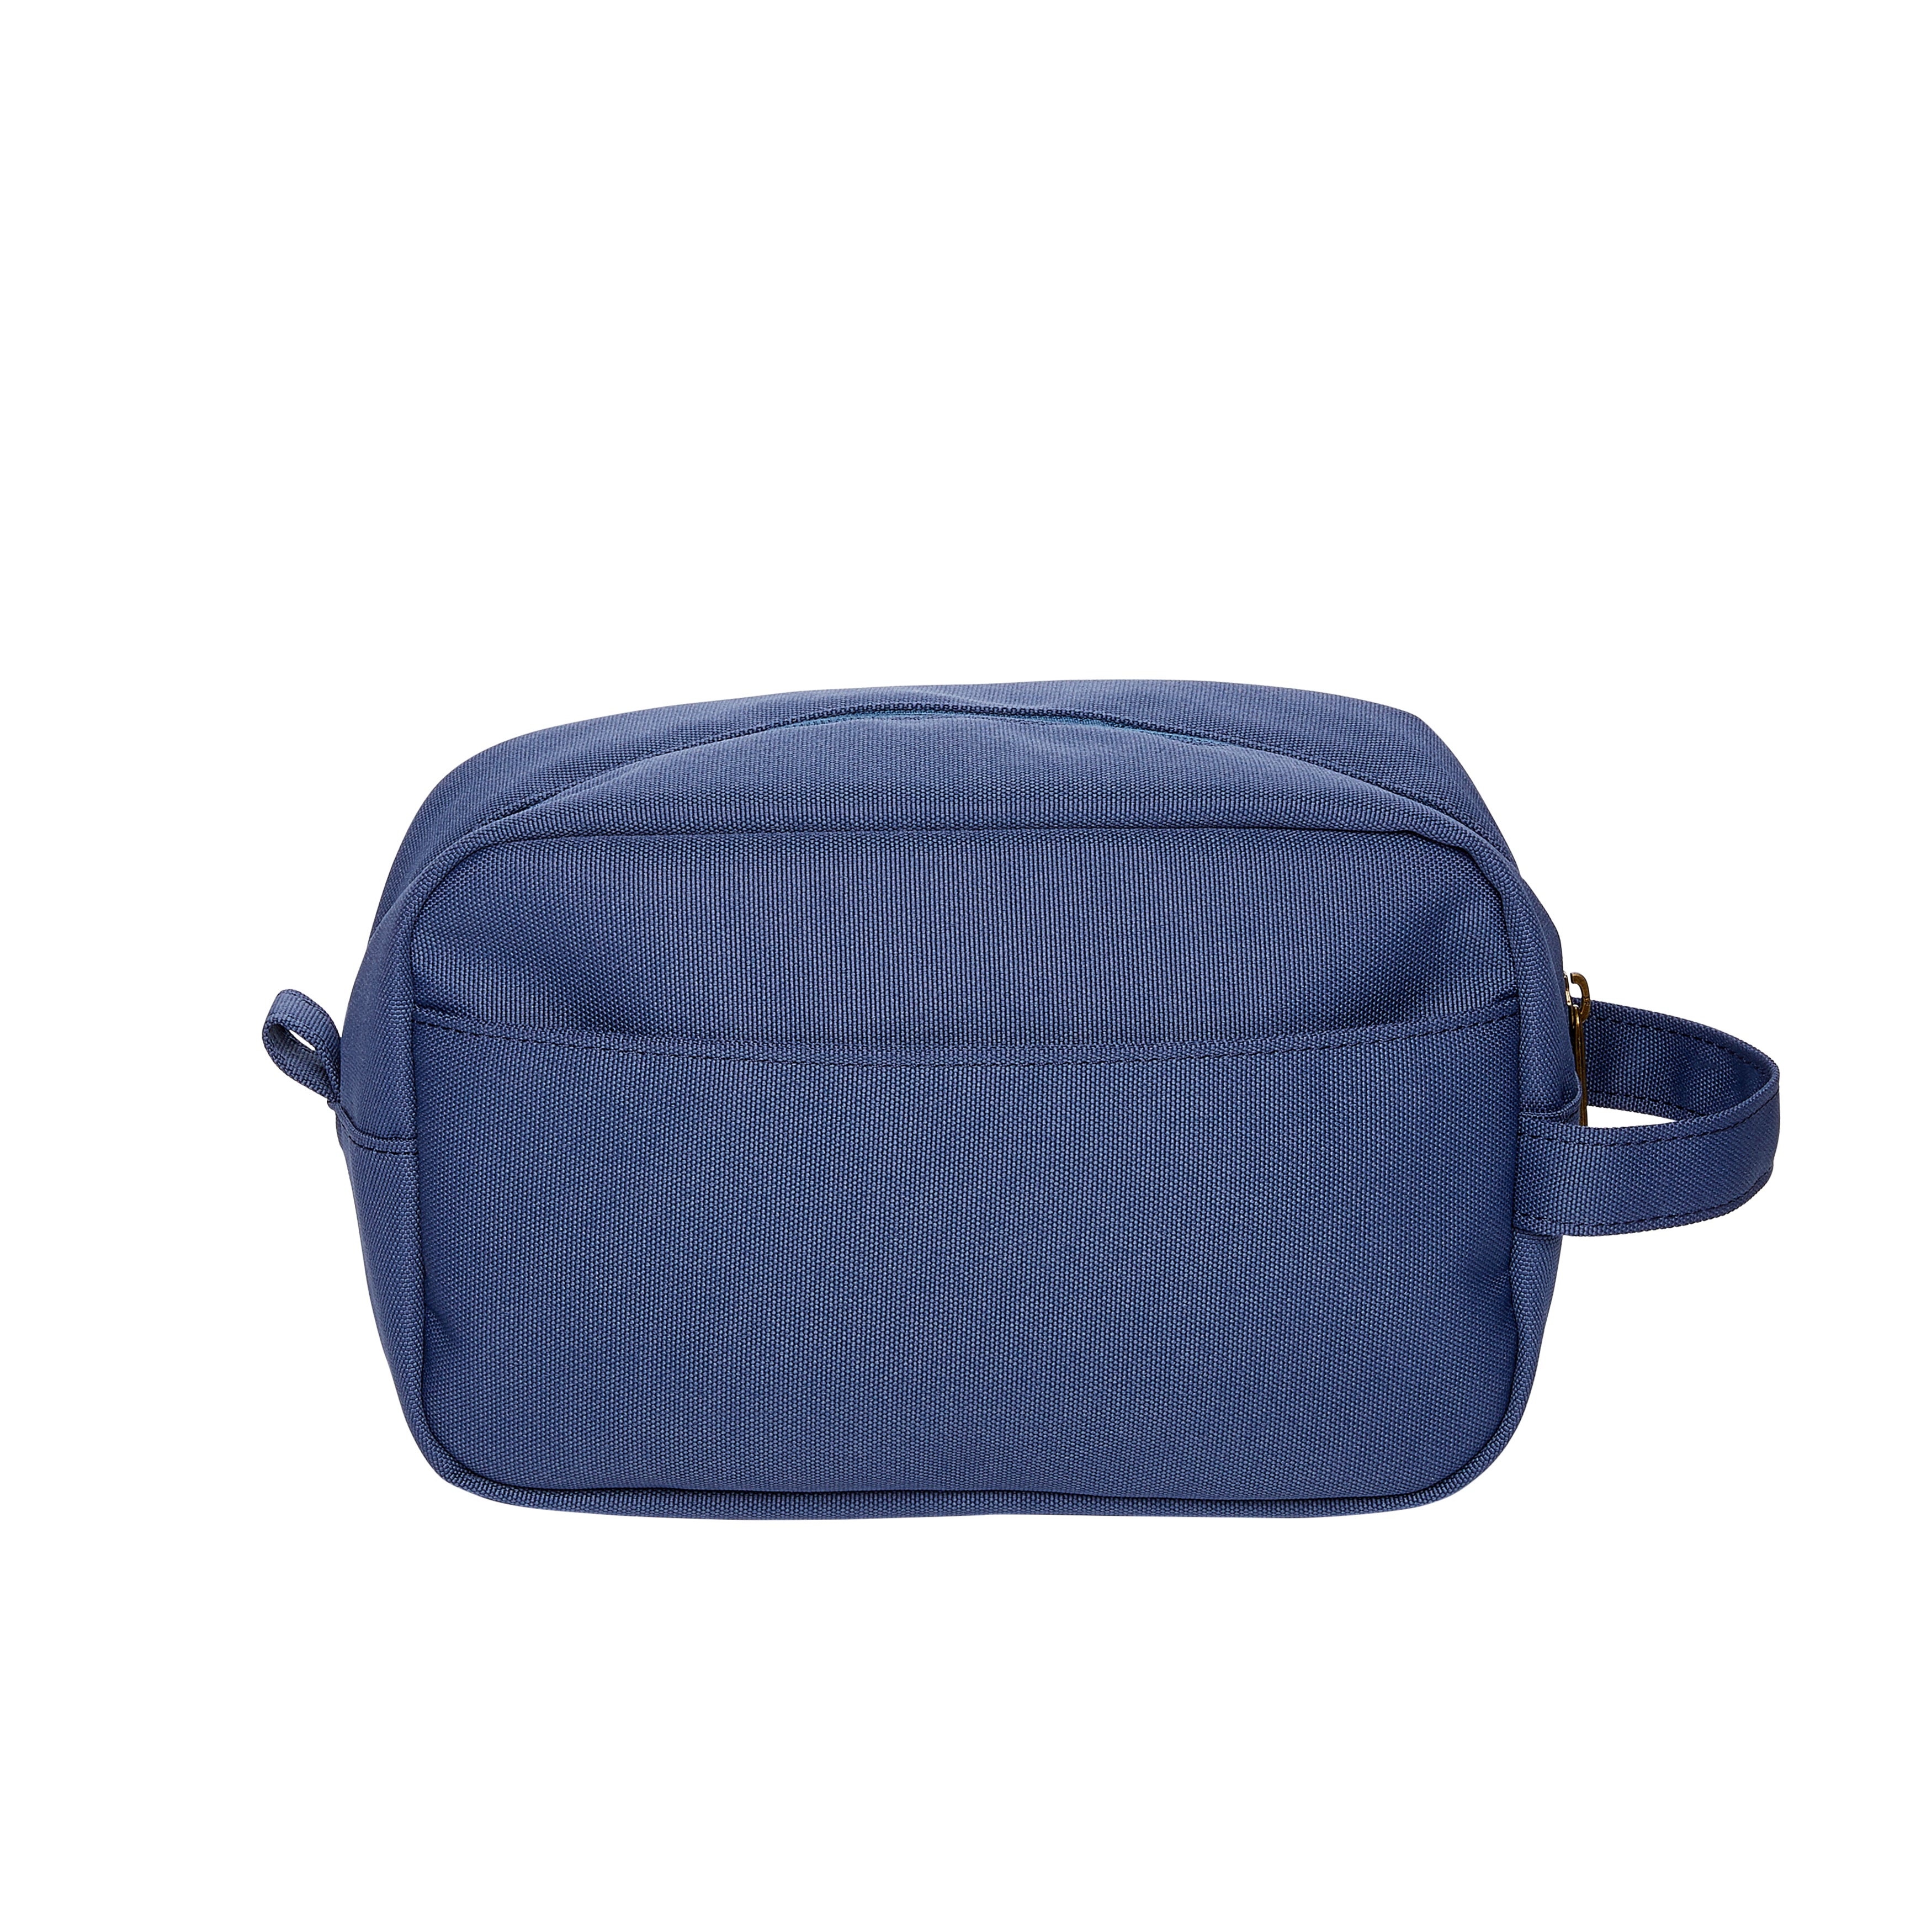 Handbag essentials to carry with you | Liberty